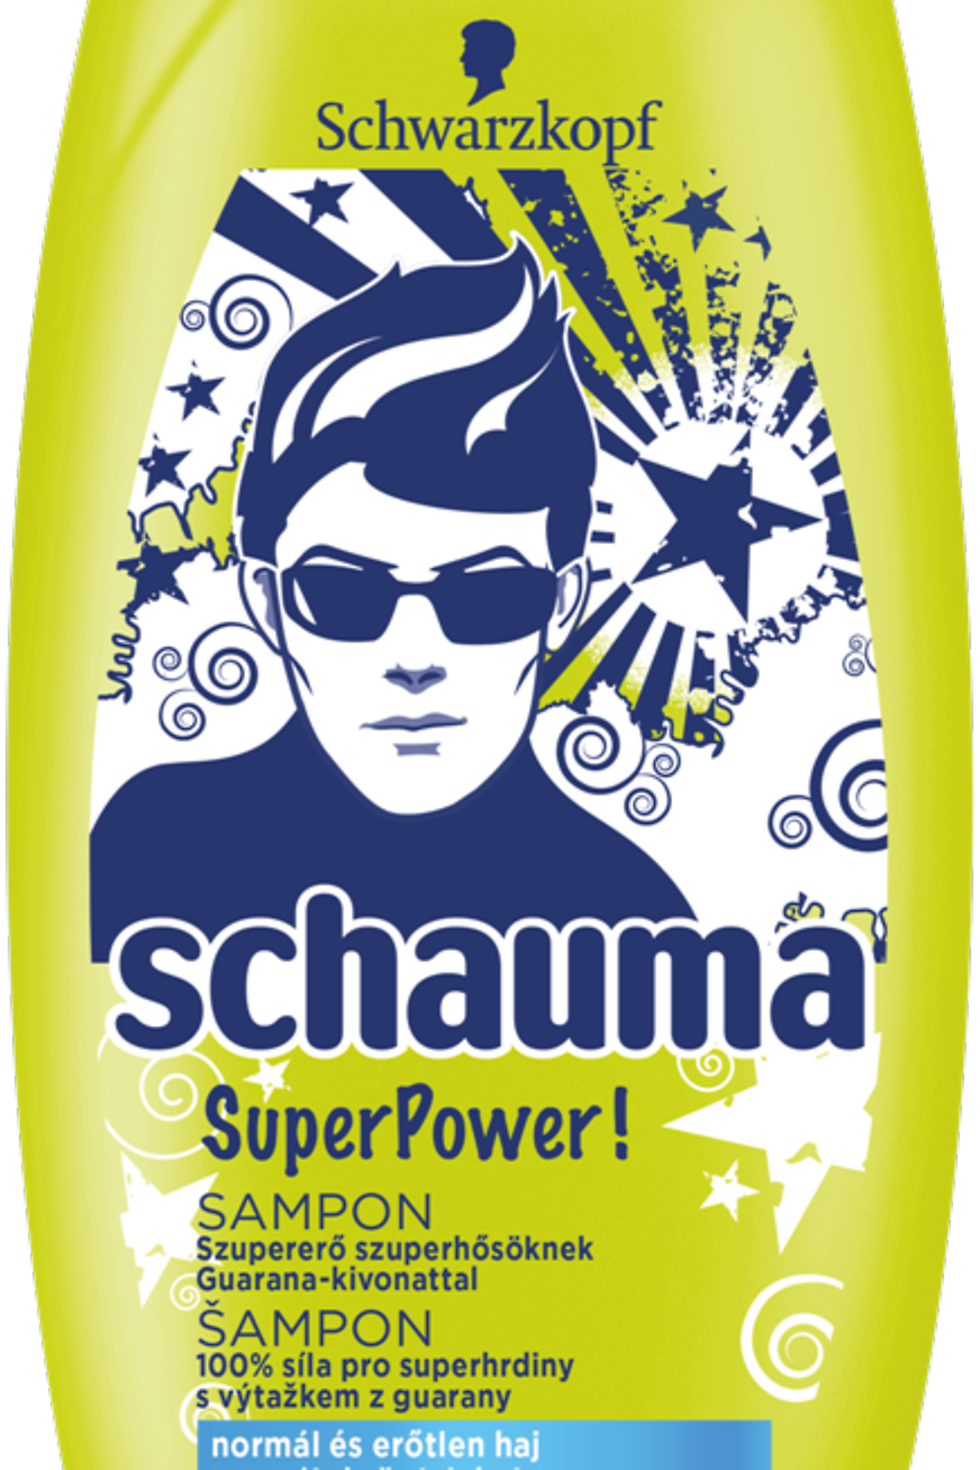 
Šampón Schauma SuperPower!,400 ml